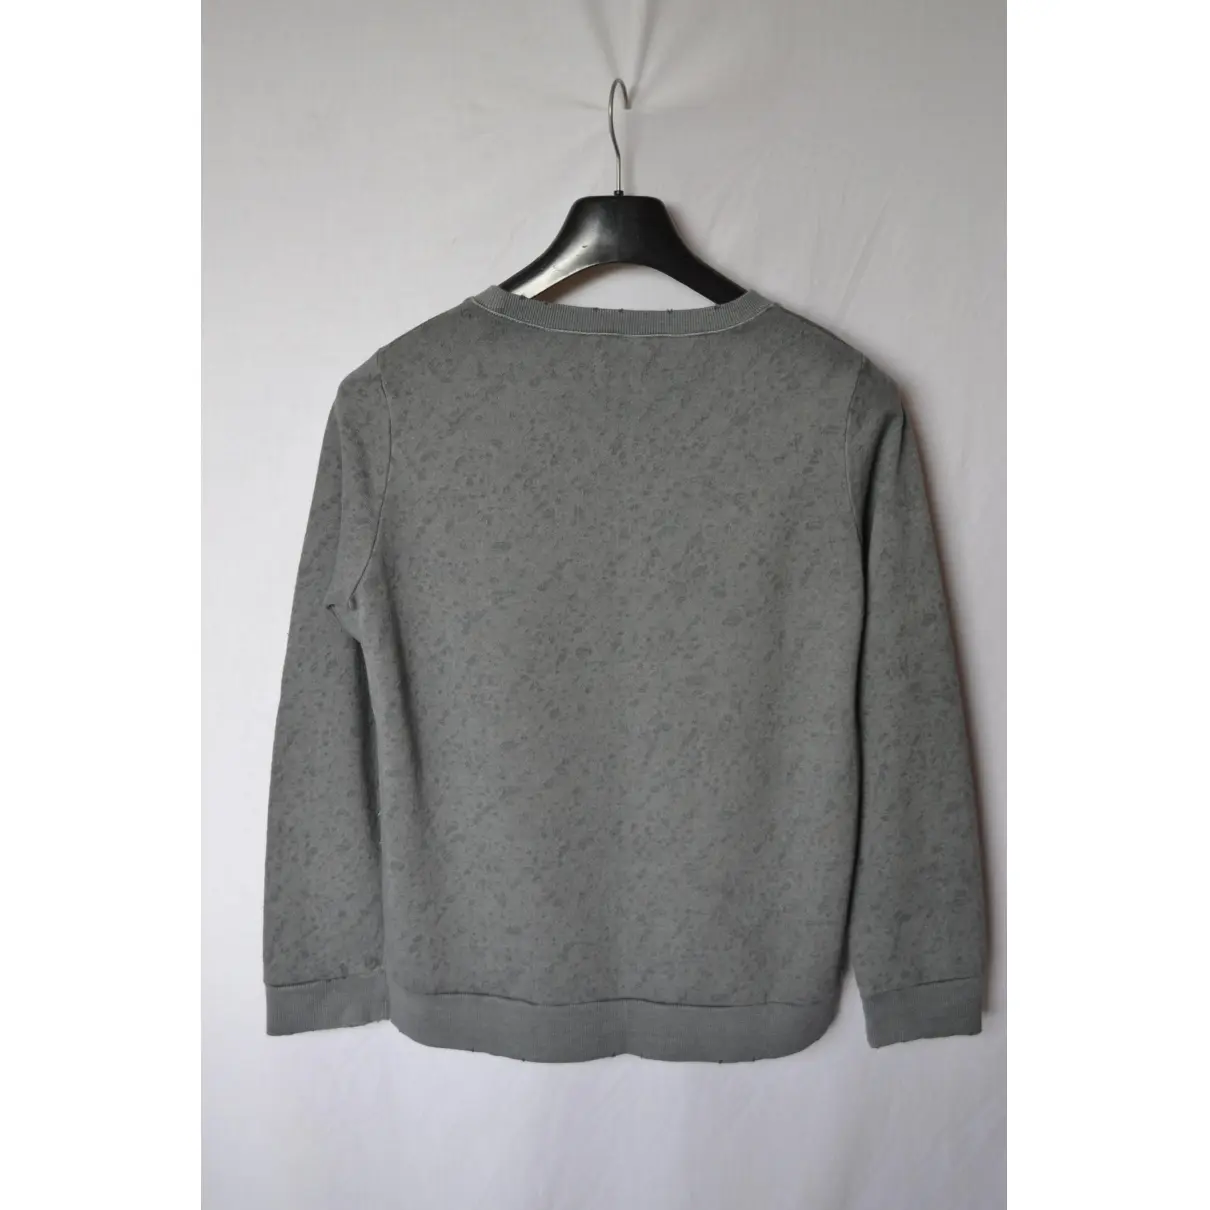 Buy Swildens Grey Cotton Knitwear online